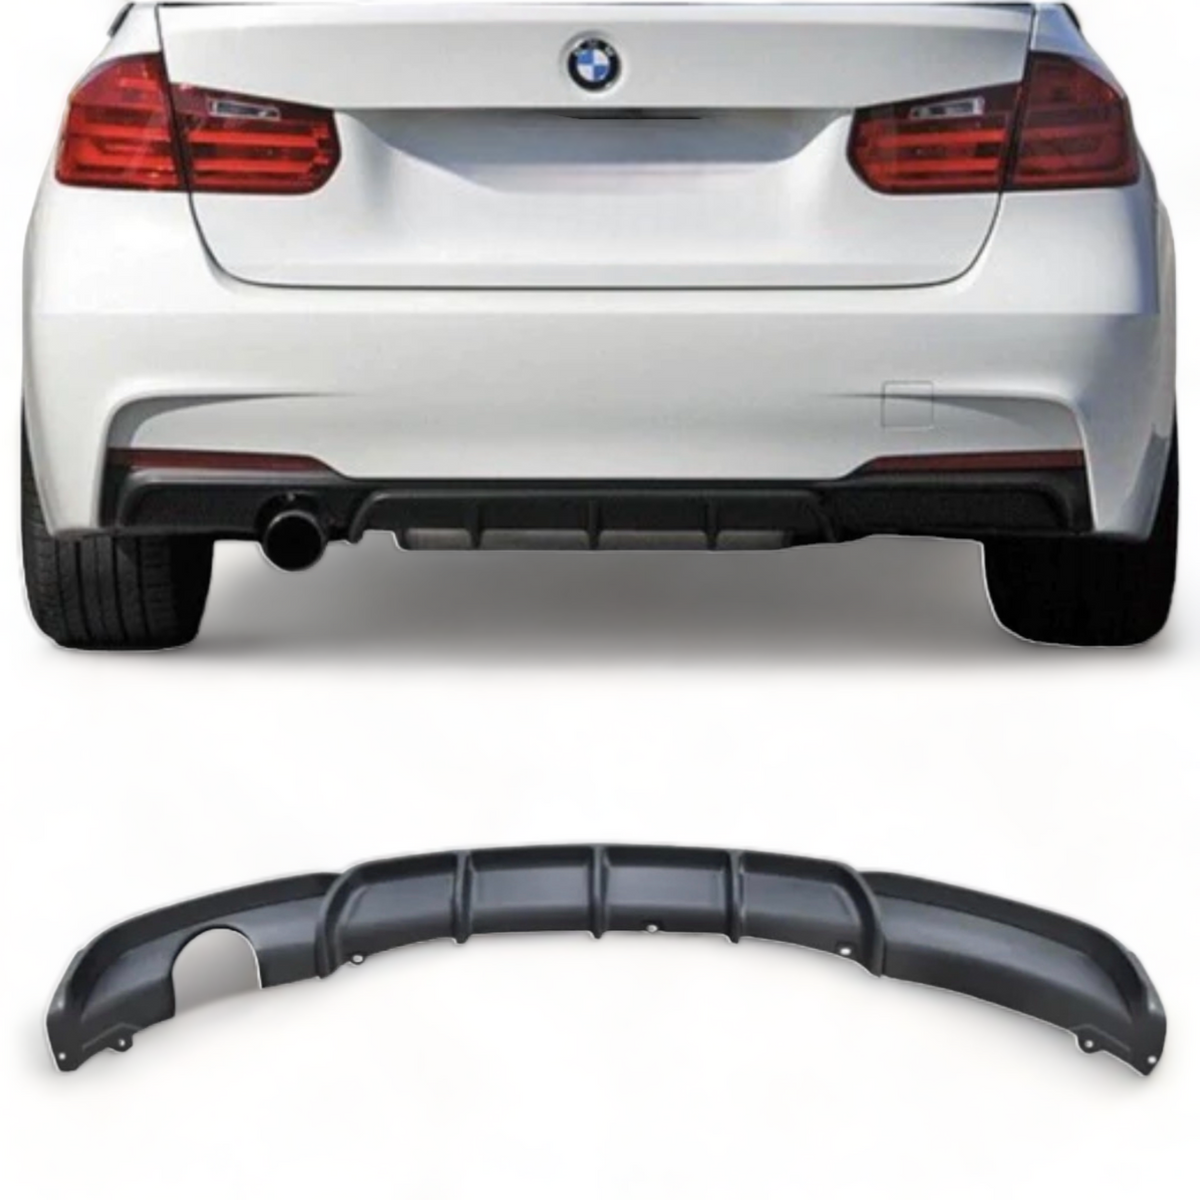 Rear Diffuser - Single Exit - Fits BMW F30 F31 - 3 Series - M Sport - Matte Black